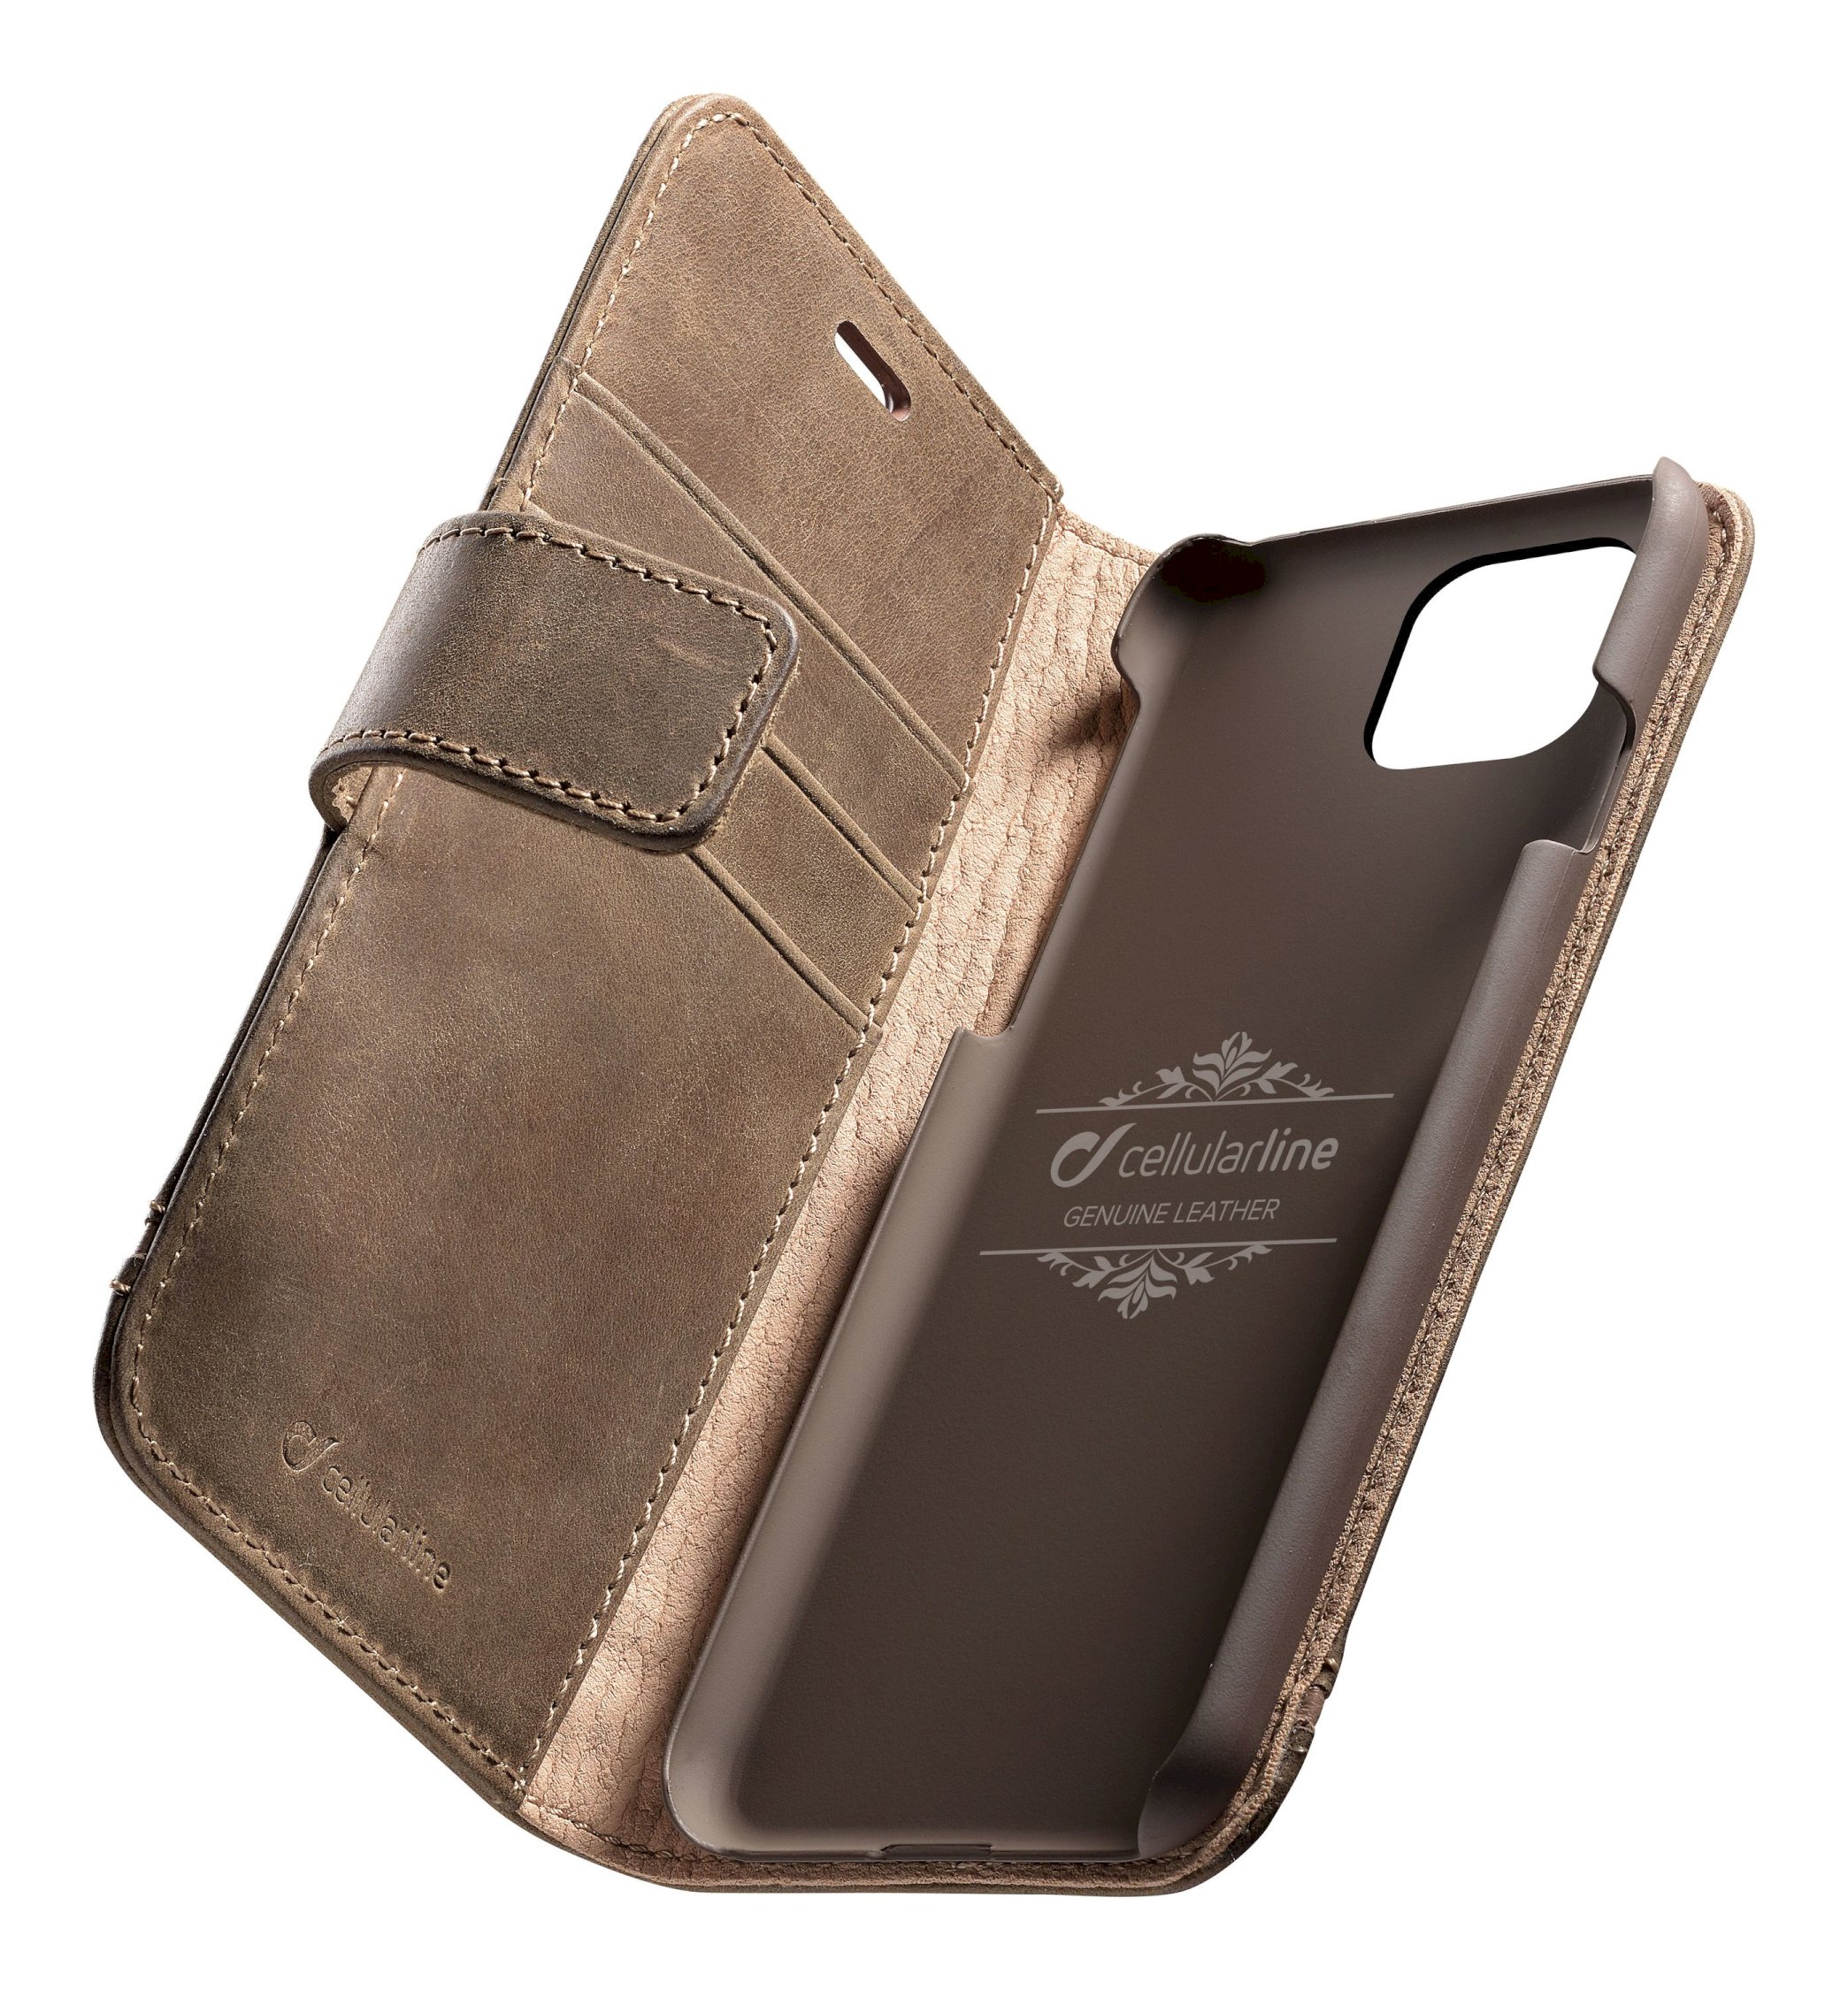 iPhone 11 Pro Max, case premium leather, brown